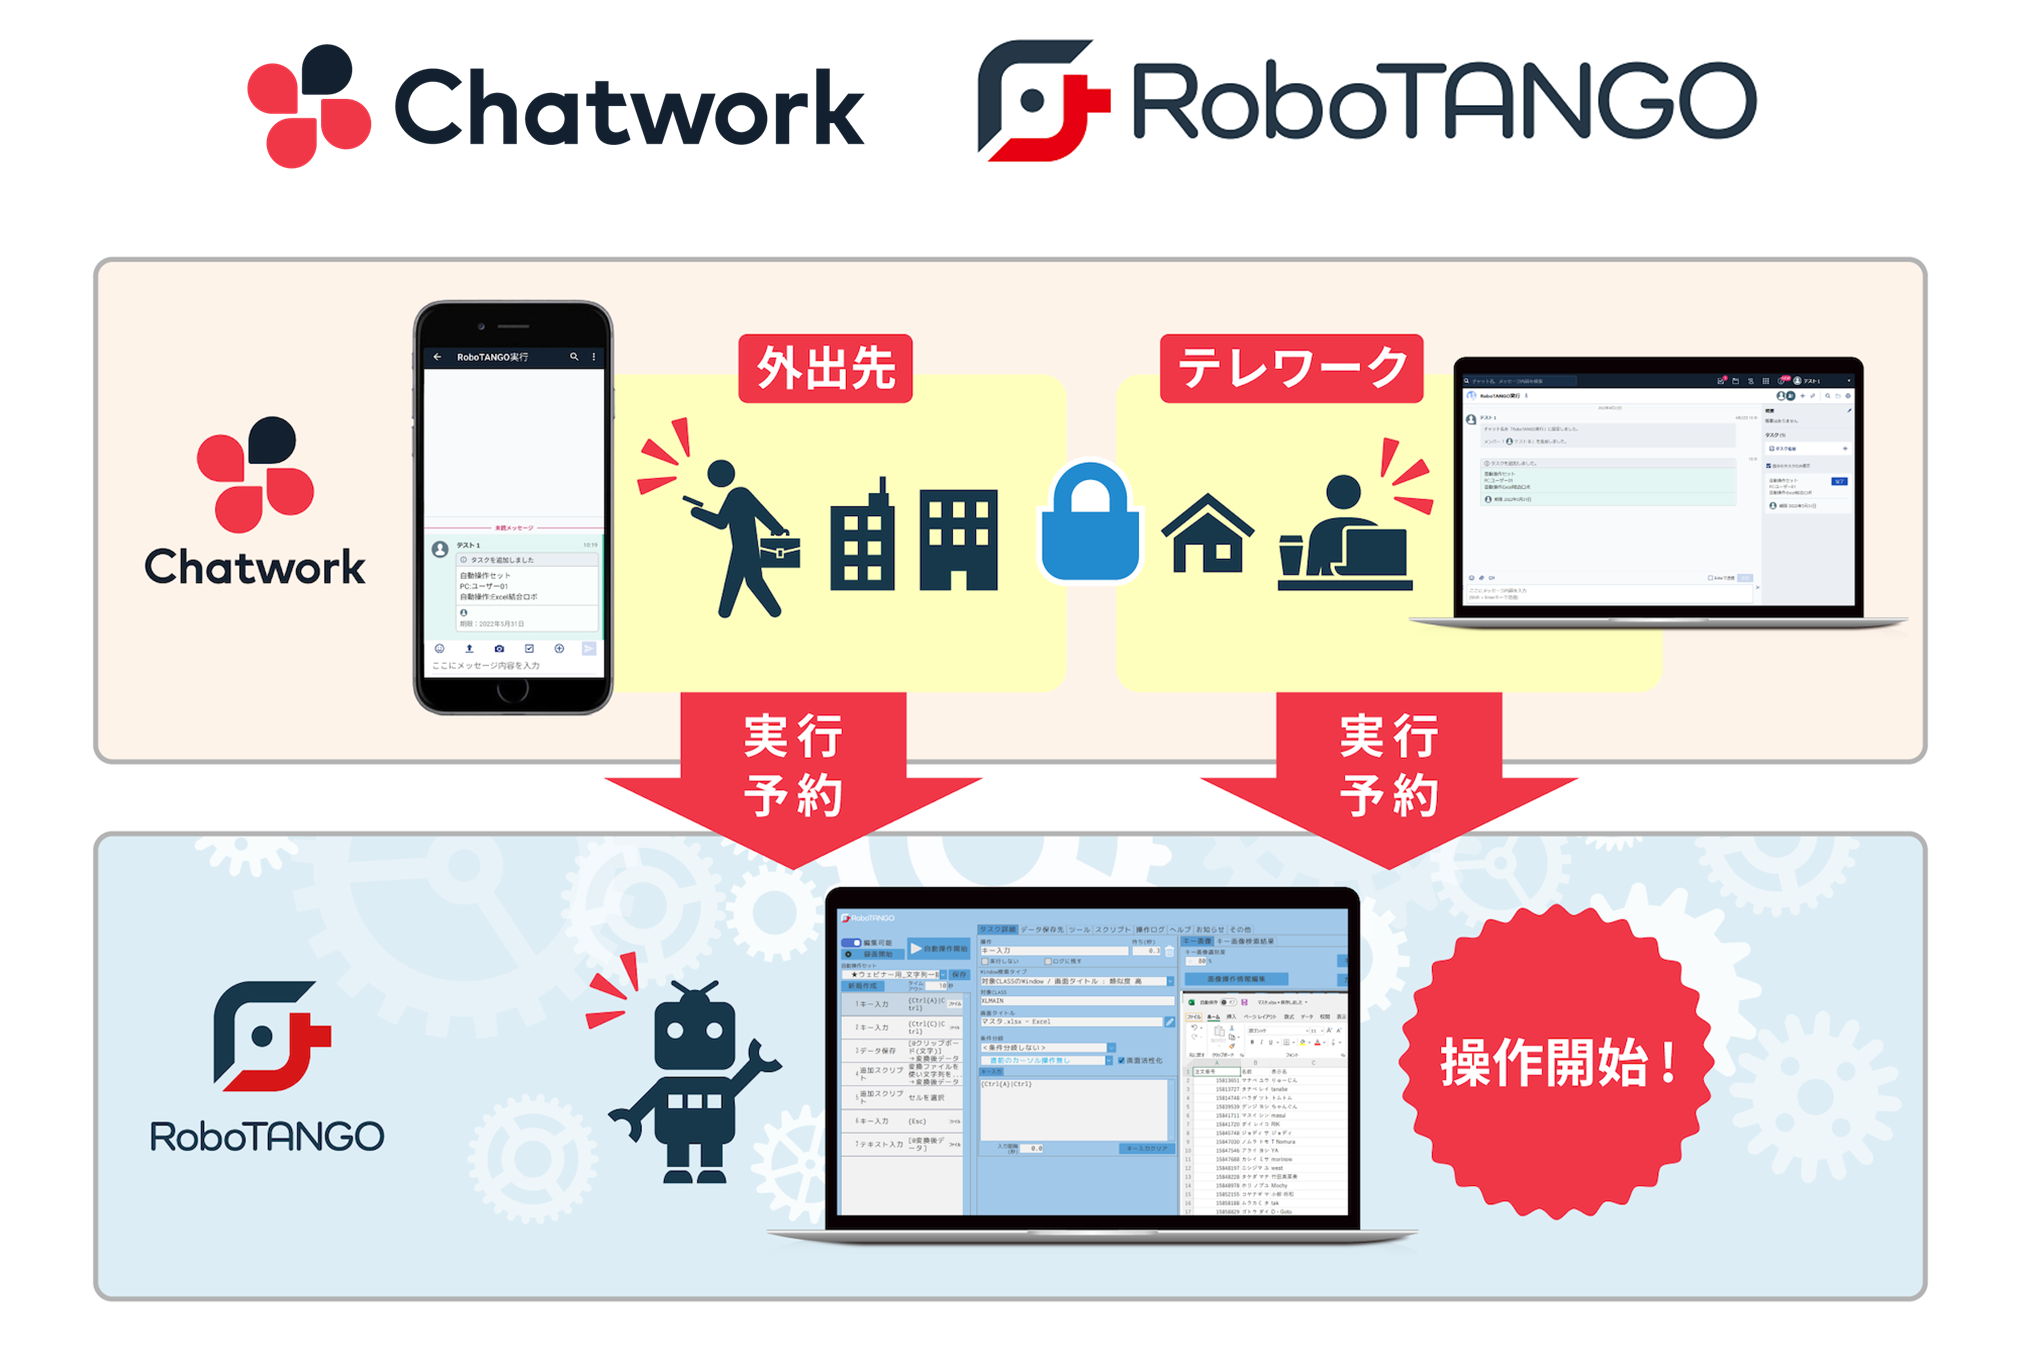 スターティアレイズのRPA『RoboTANGO』、ビジネスチャット『Chatwork』とAPI連携 ～『Chatwork』からロボの実行操作が可能に。6月下旬から提供予定～